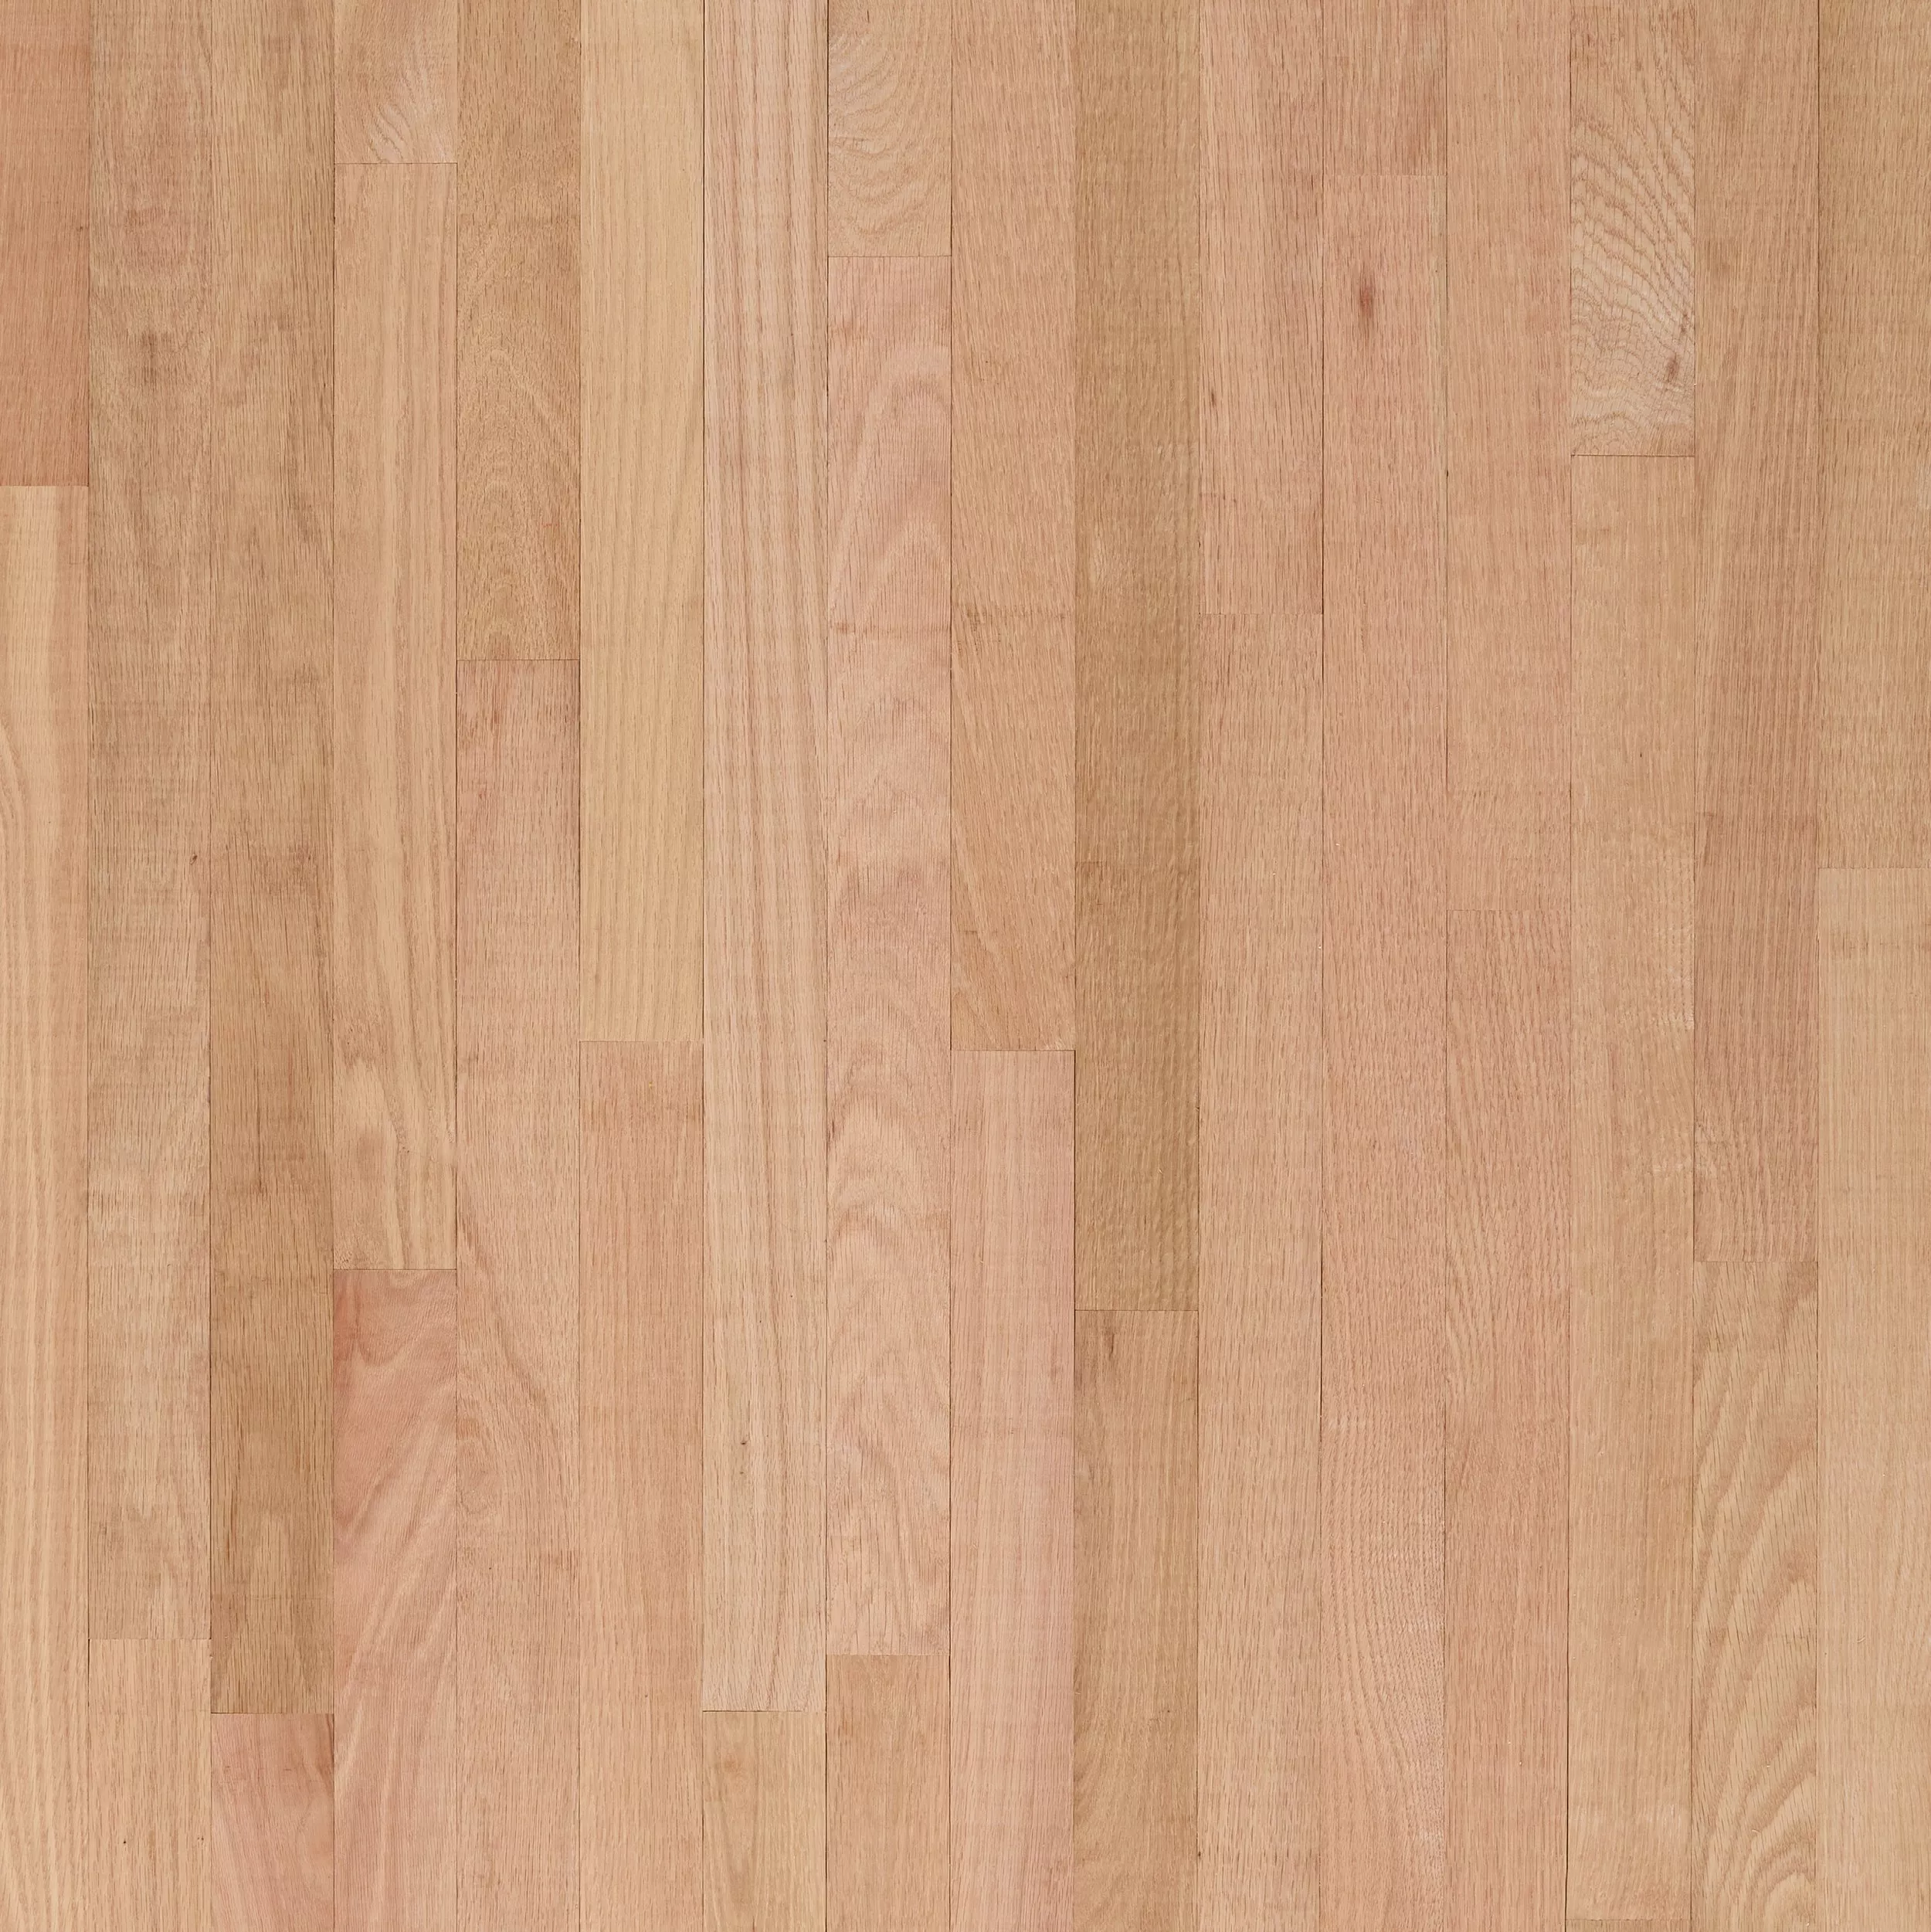 Unfinished Red Oak Solid Hardwood Select Grade